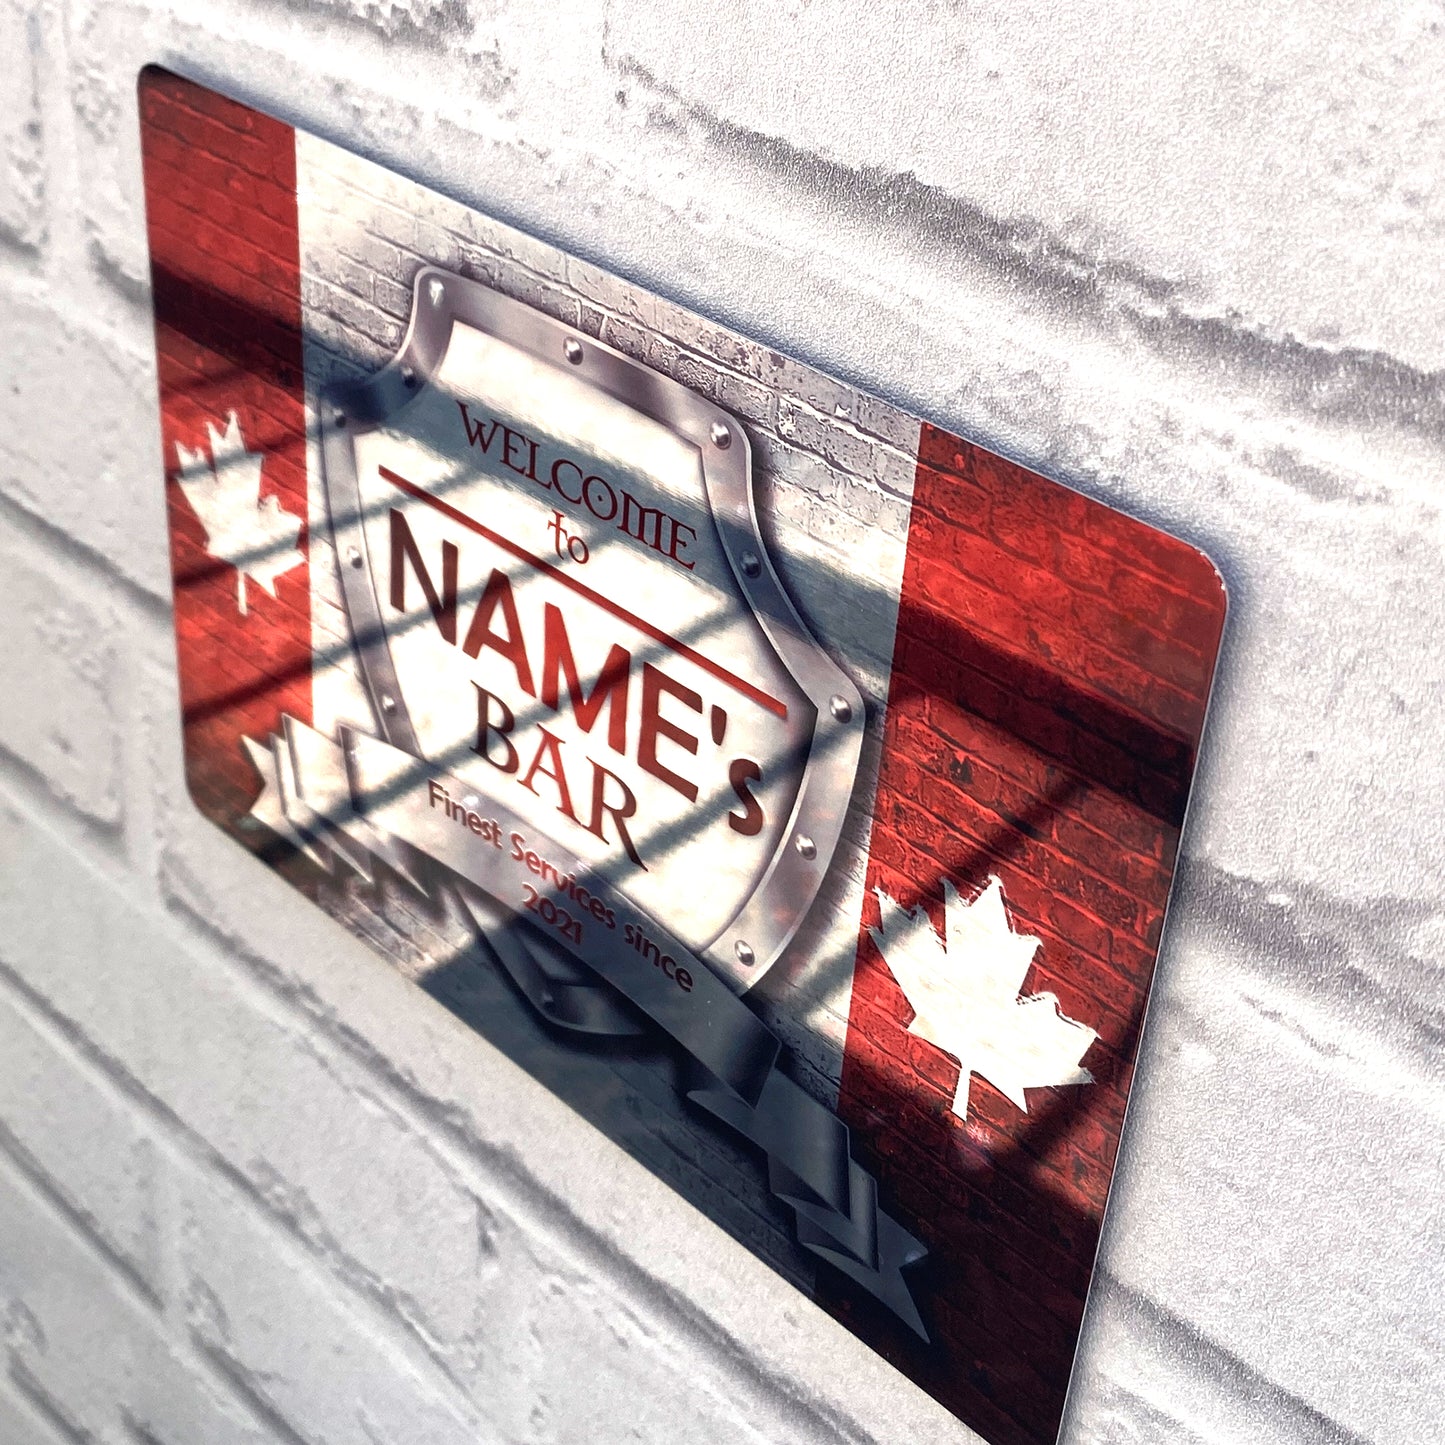 Schild mit kanadischer Flagge, hochglanzpoliert